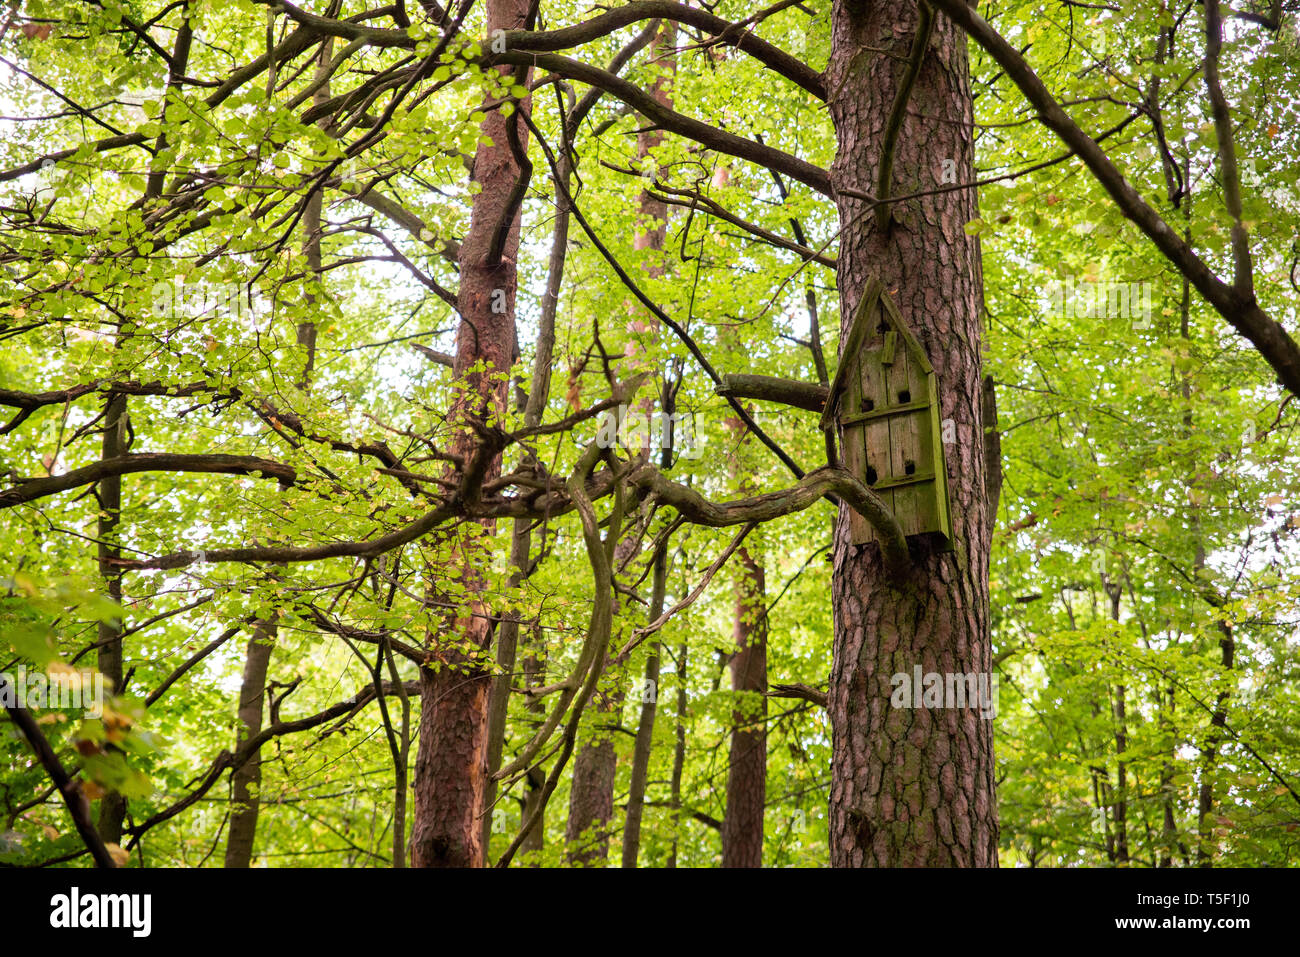 Vogelhaus auf einem Baum im Wald unter Bäumen, Nistkasten, Brutzeit der Vögel, vogel Schutz Stockfoto